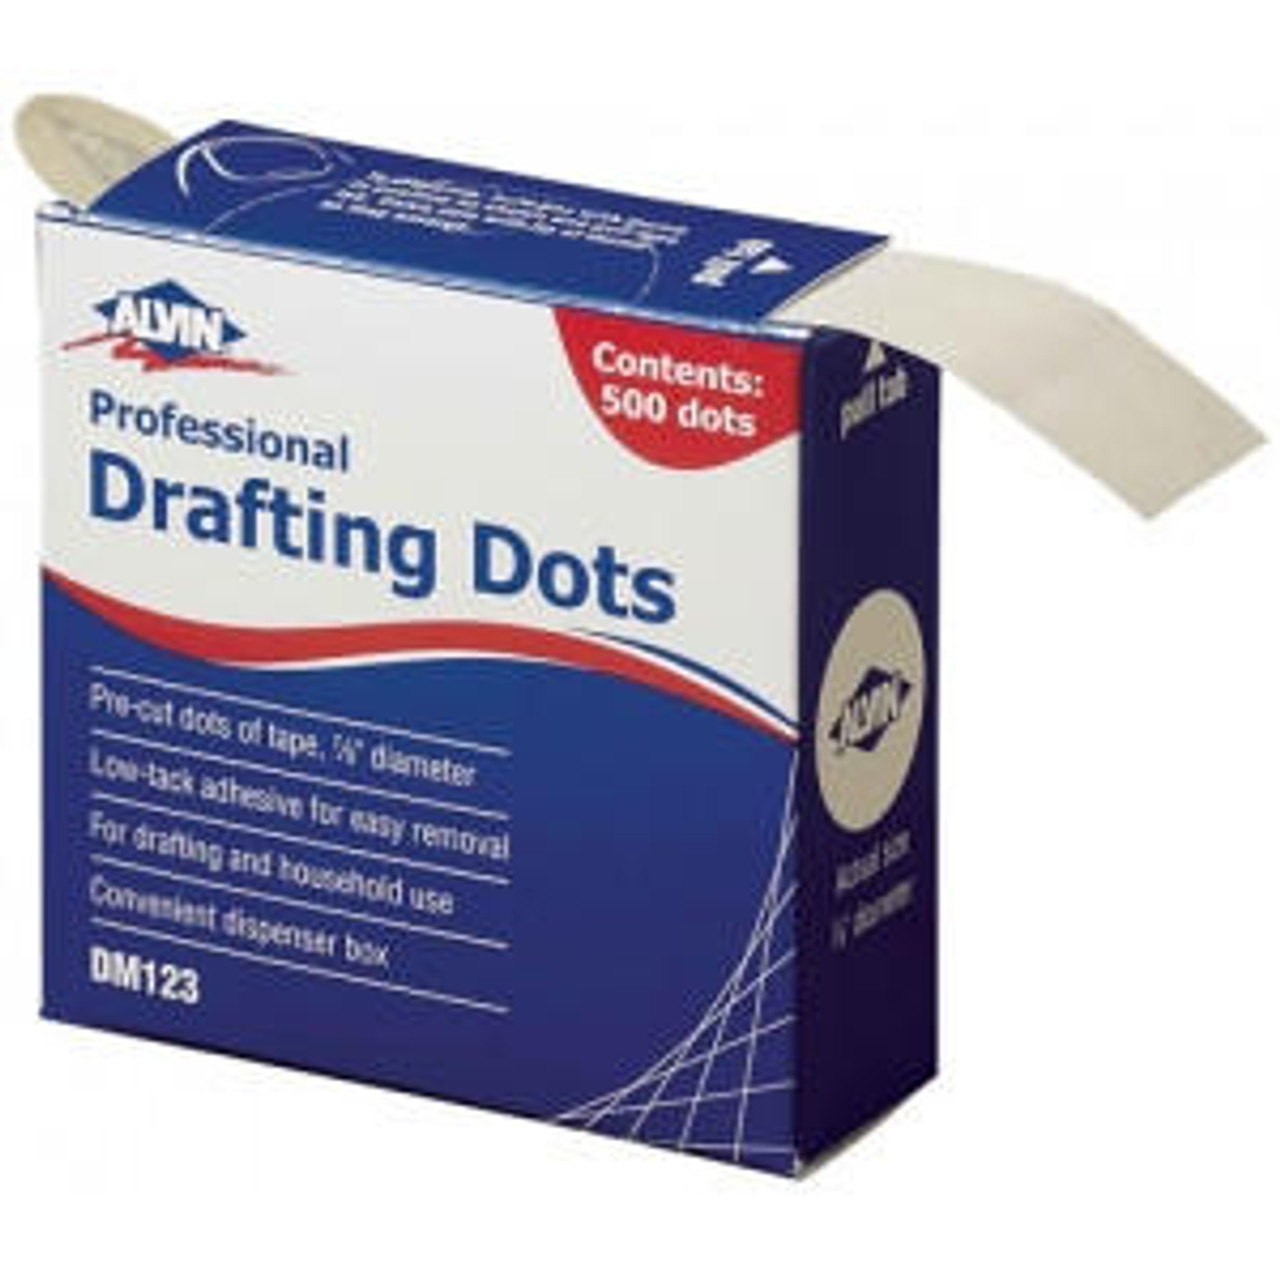 Drafting Dots Box of 500